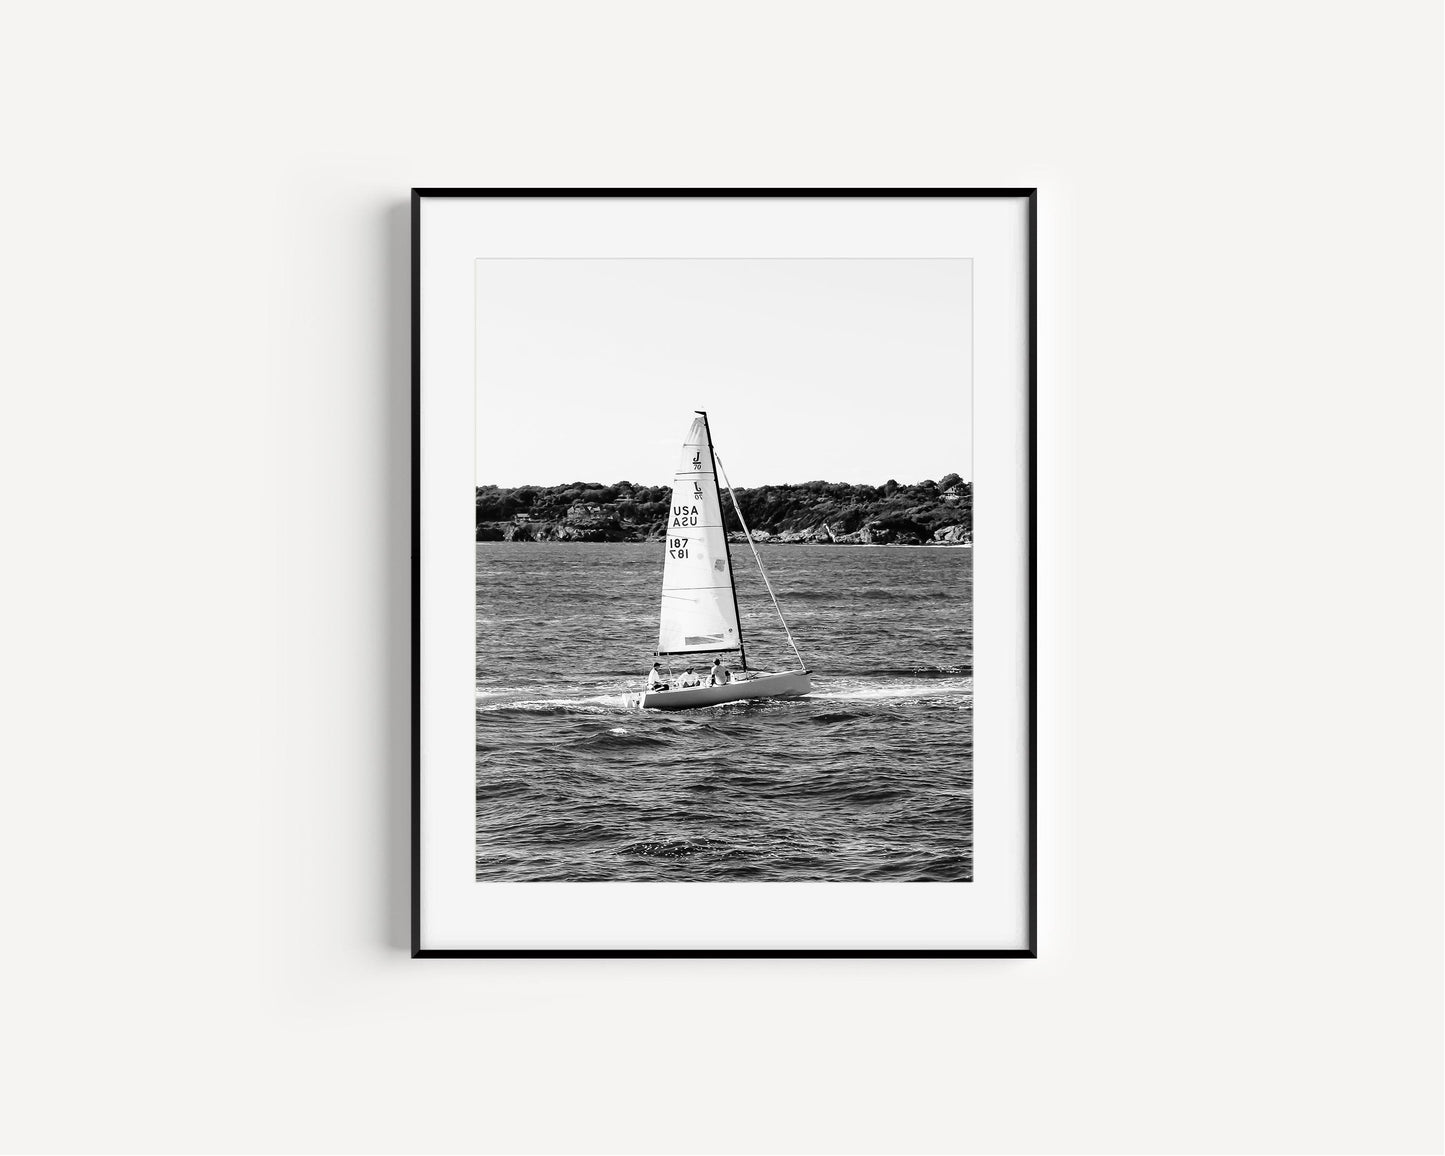 Sail Away | Beach Photography Print - Departures Print Shop